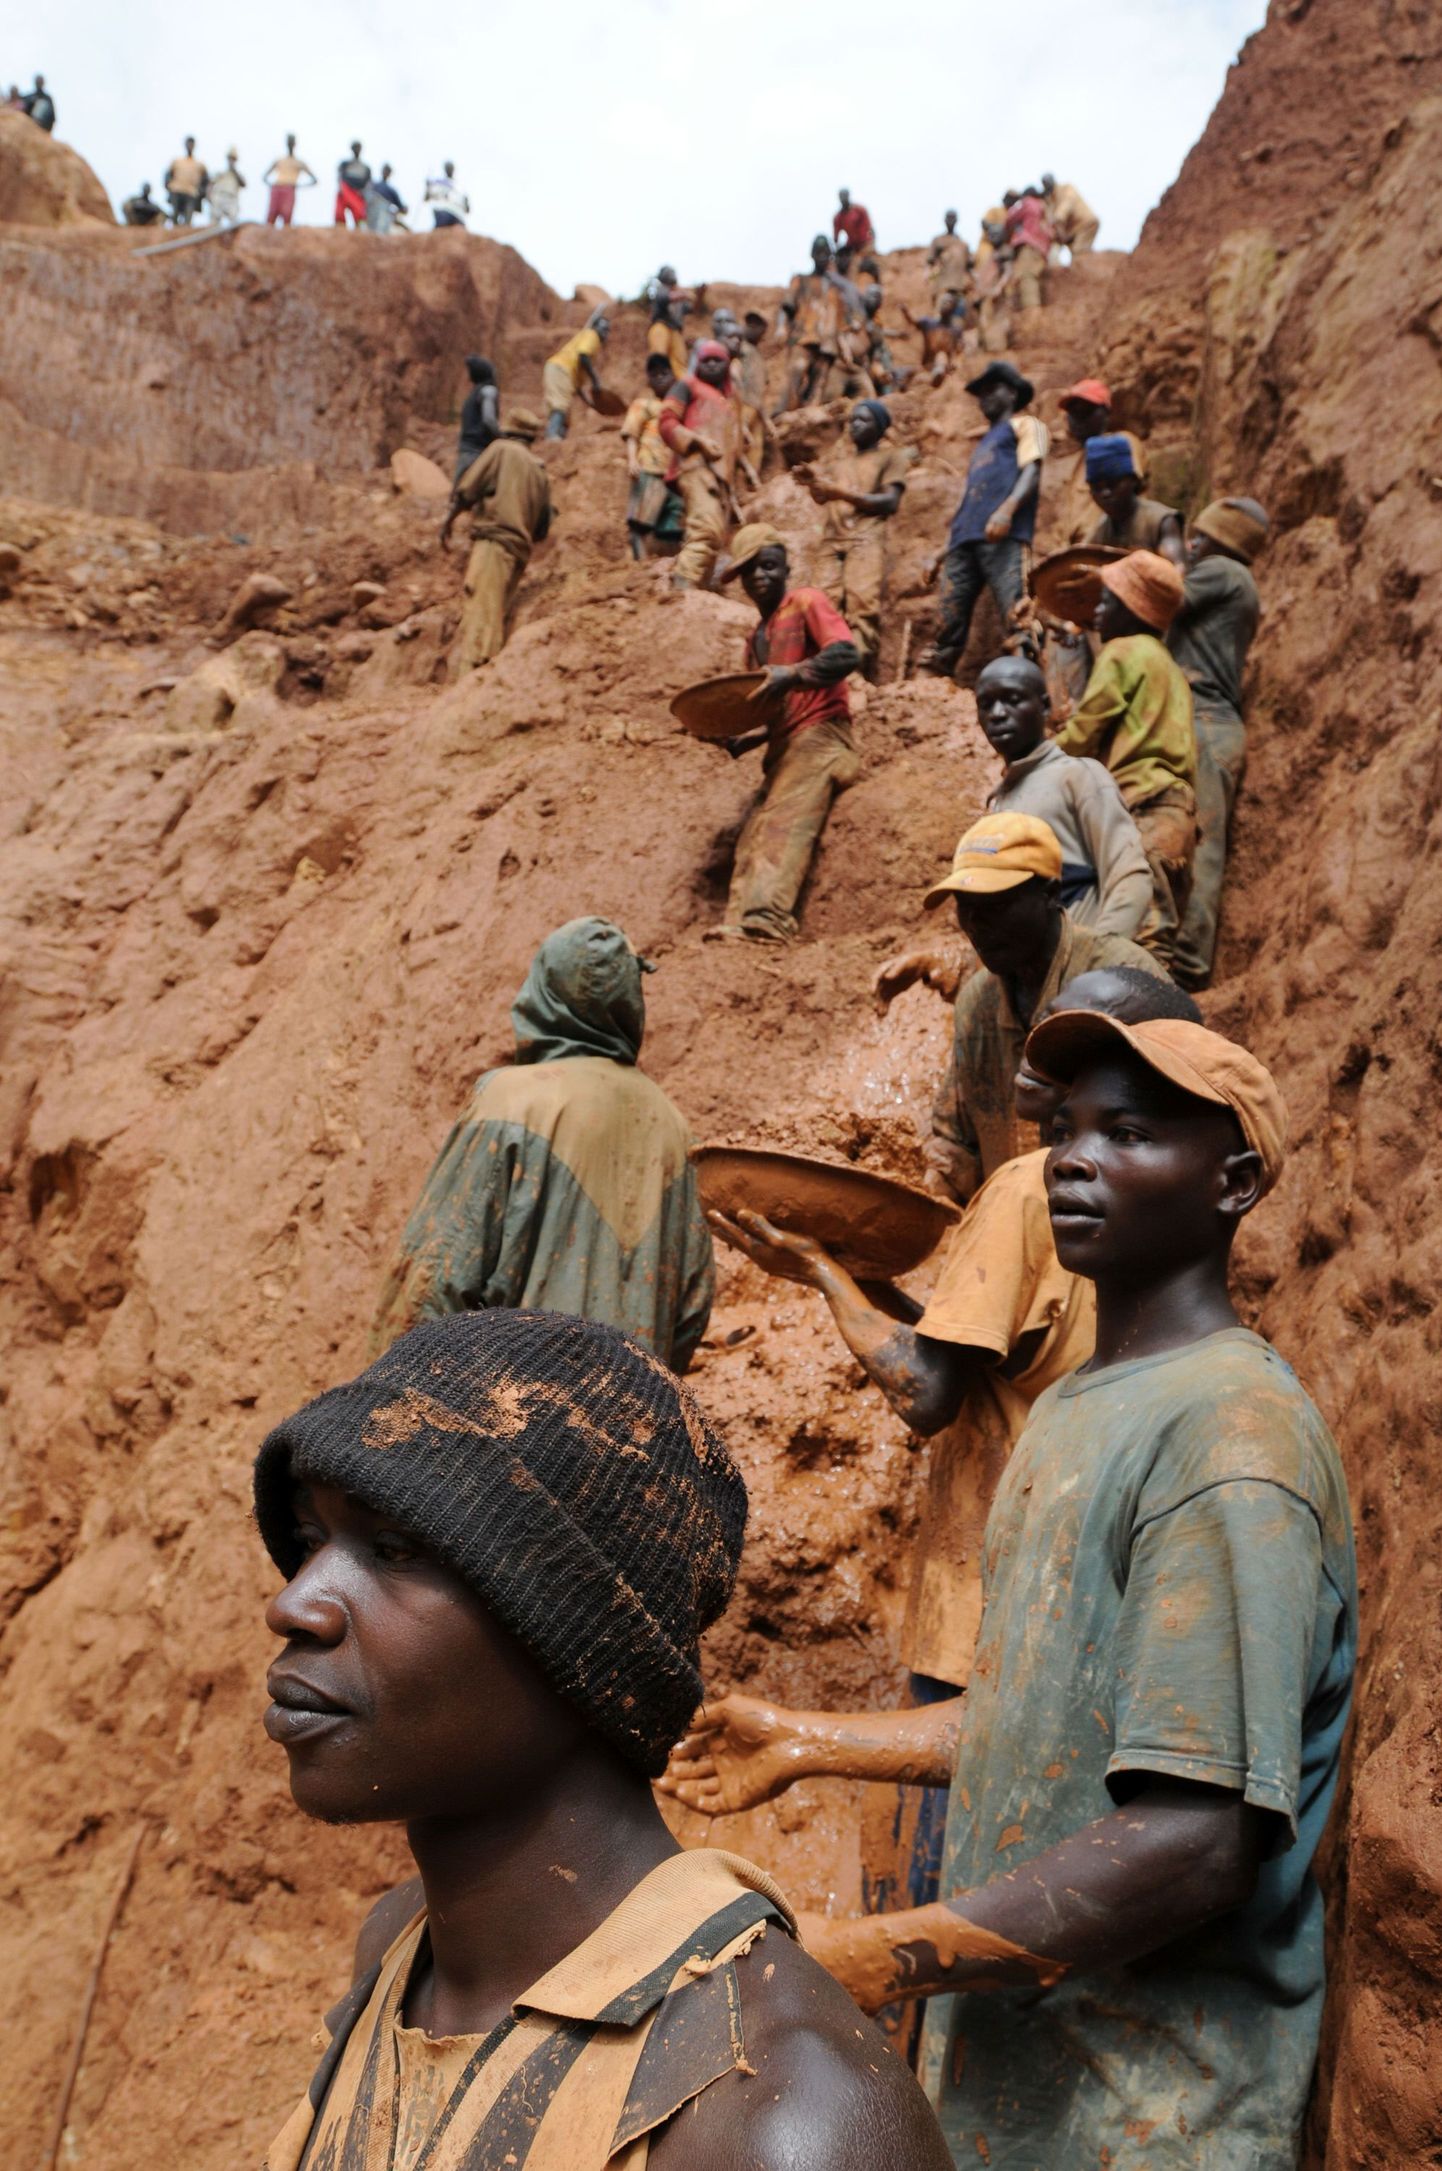 Aafrika kullakaevandus.